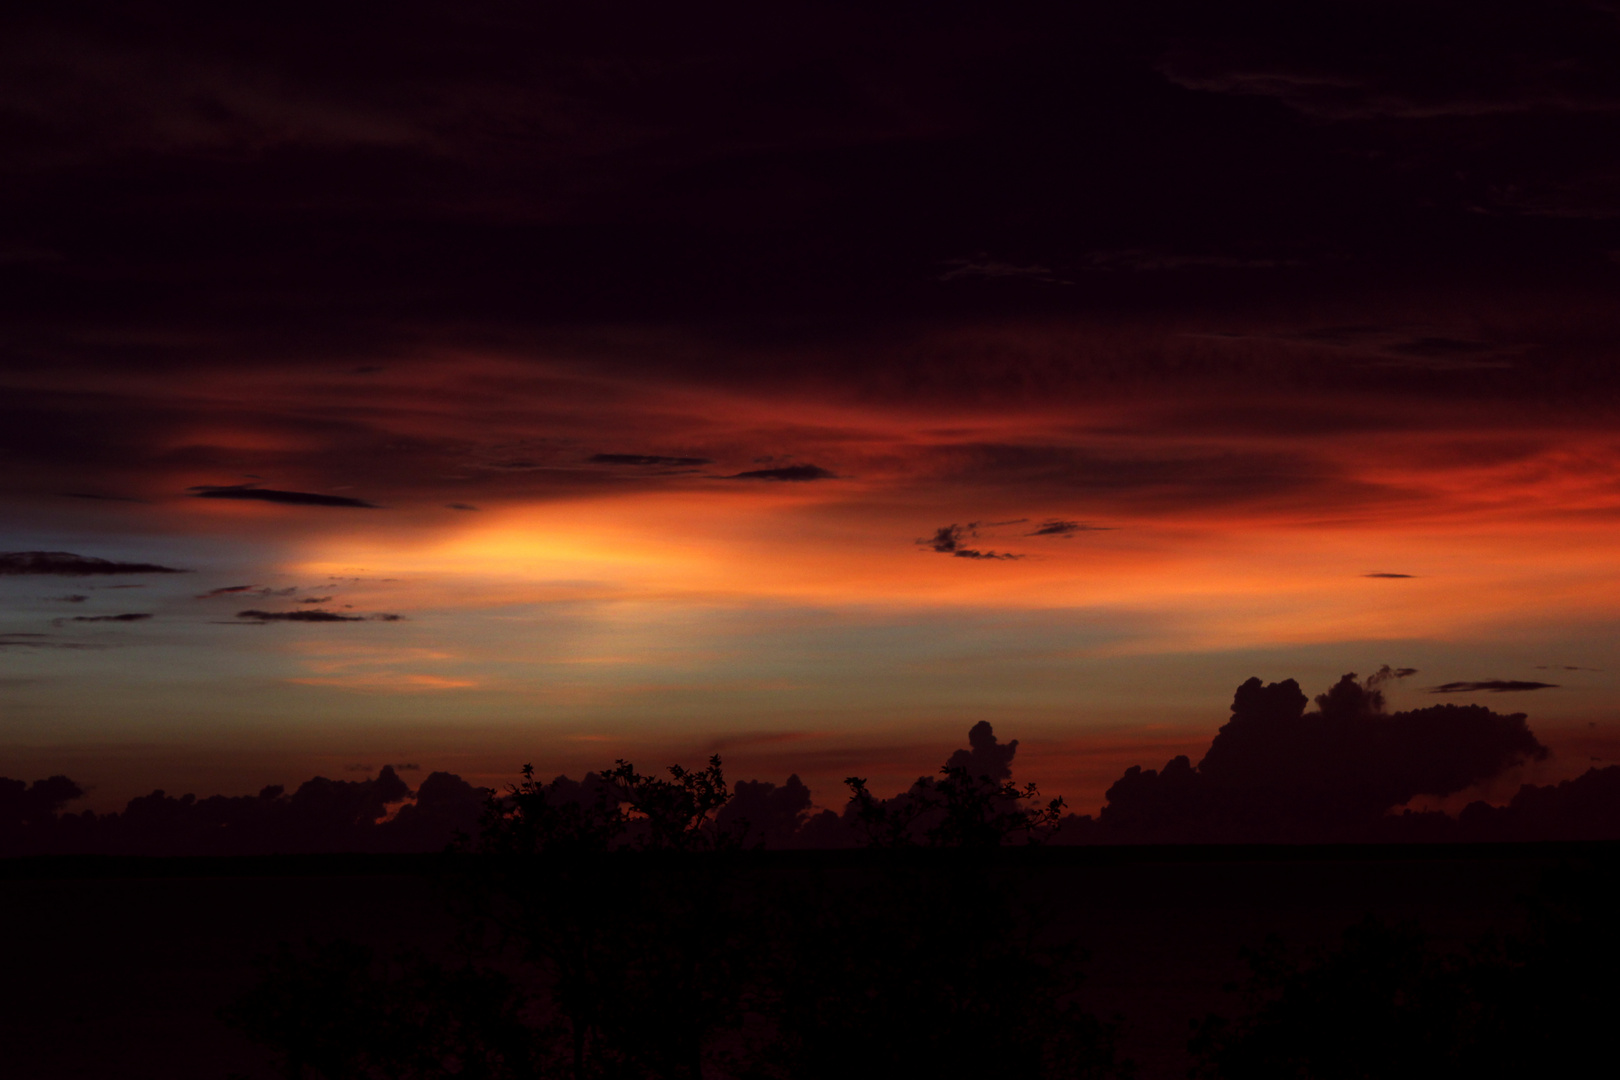 Sunset / Twilight, Bicentennial Park, Darwin - 01-12-2014